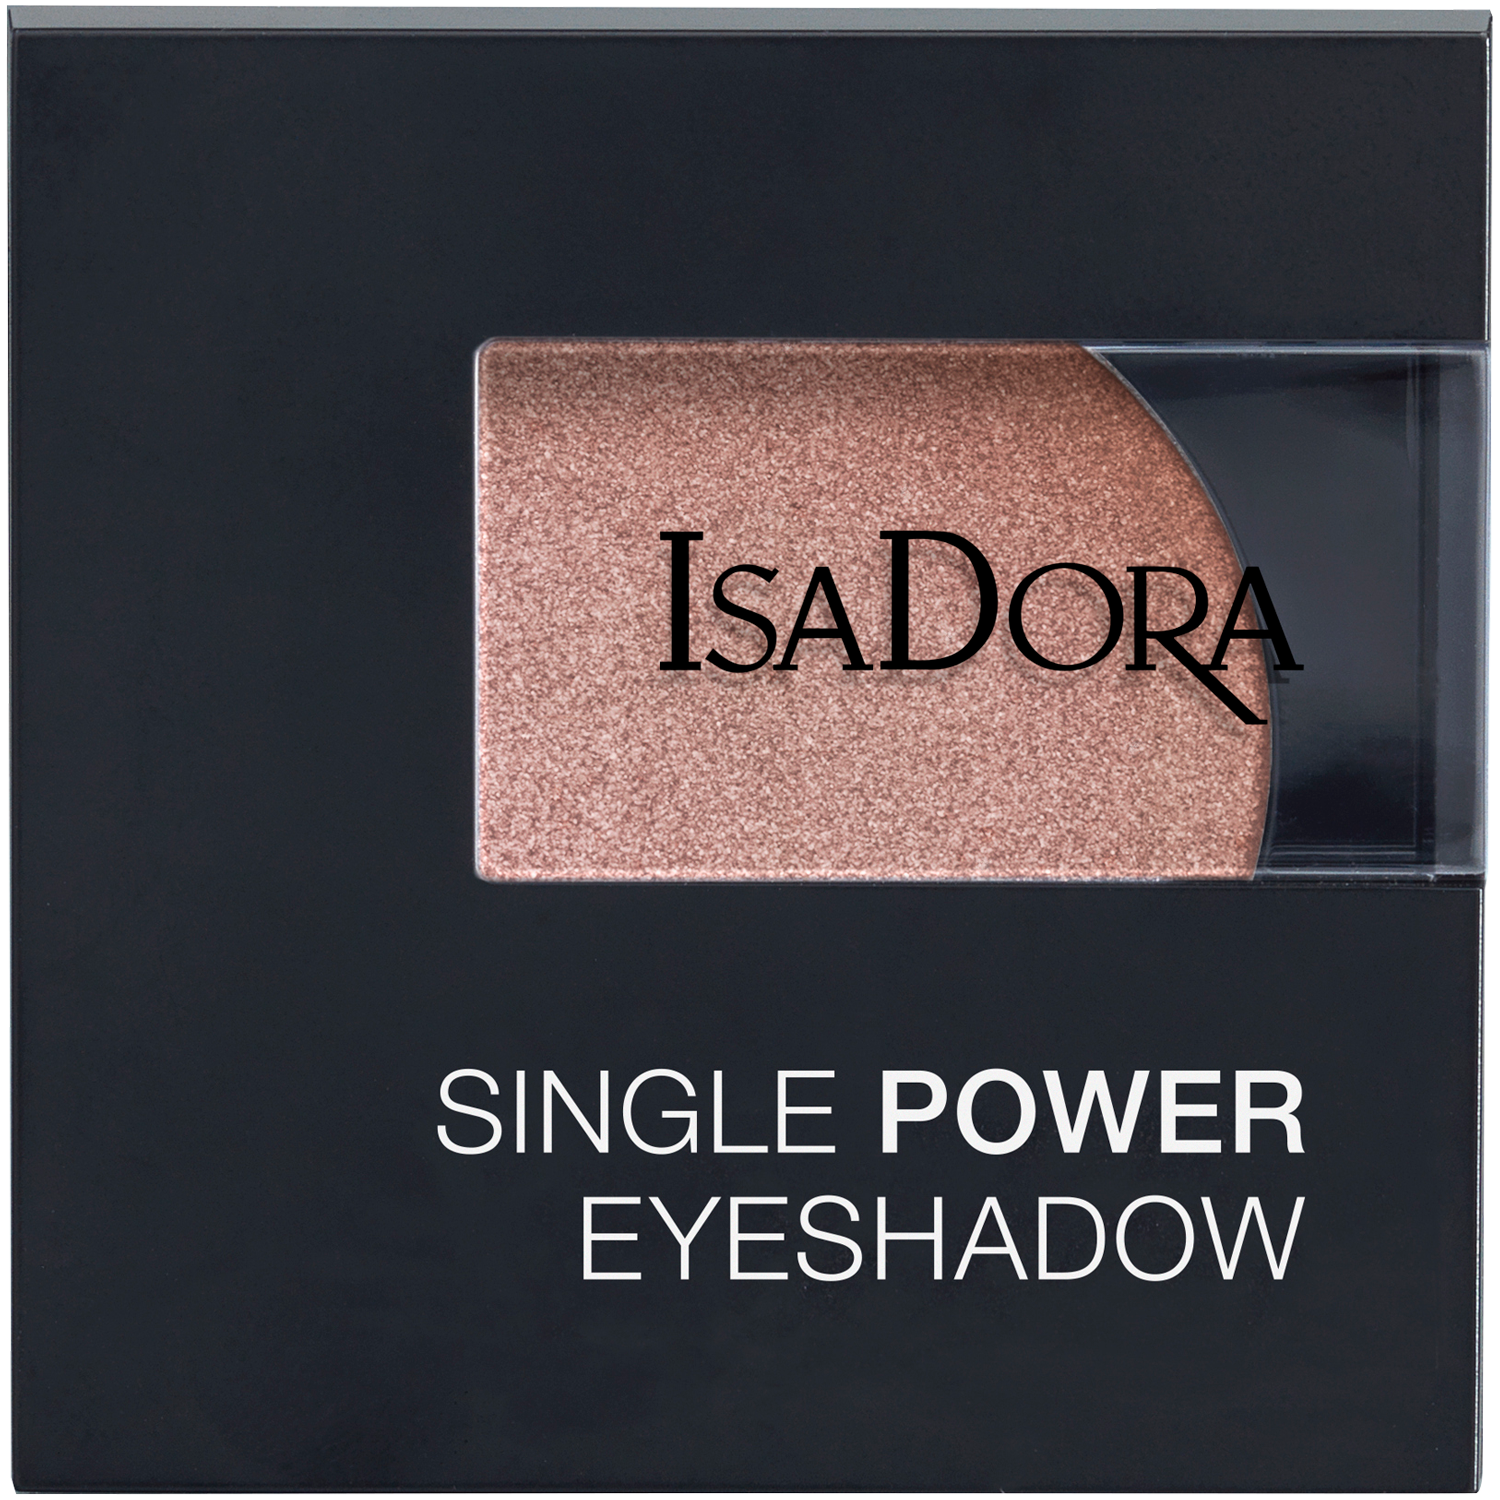 Тени для век 05 розовый песок Isadora Single Power, 2,2 гр цена и фото